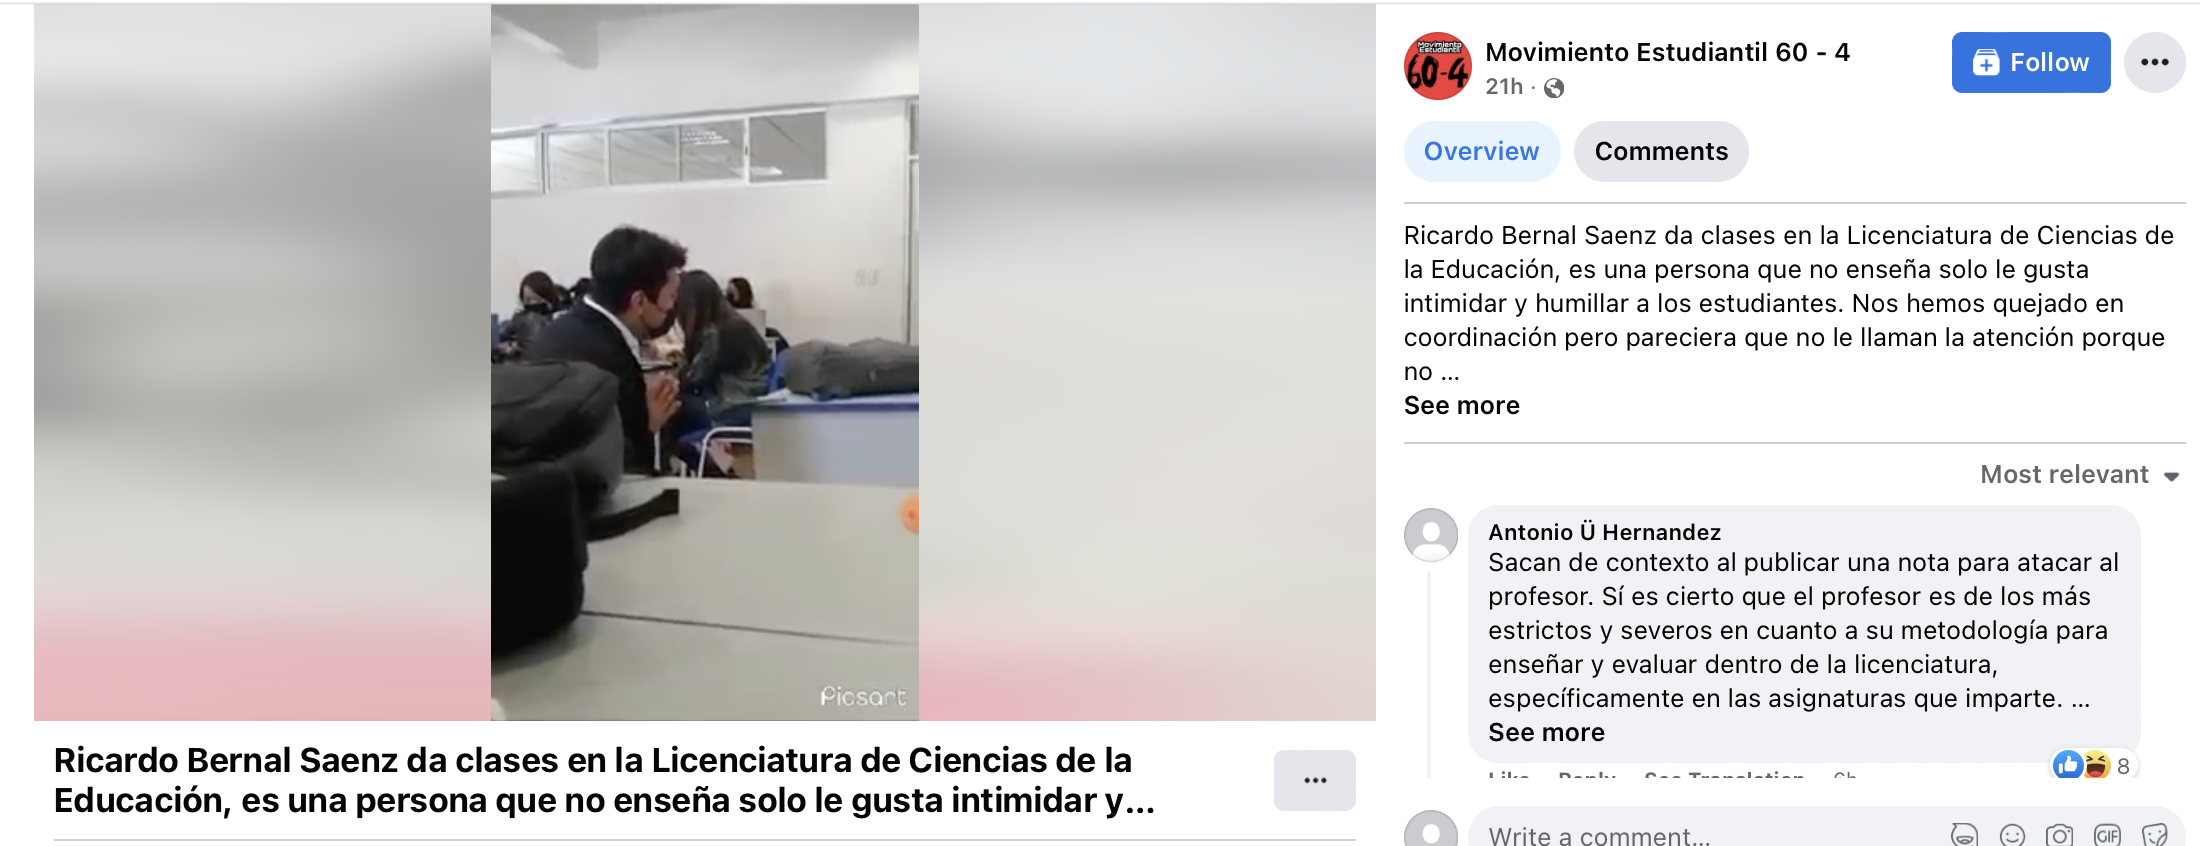 Exhiben a profesor de la UAEH que pone a rezar de rodillas a estudiante |  Video | Aristegui Noticias